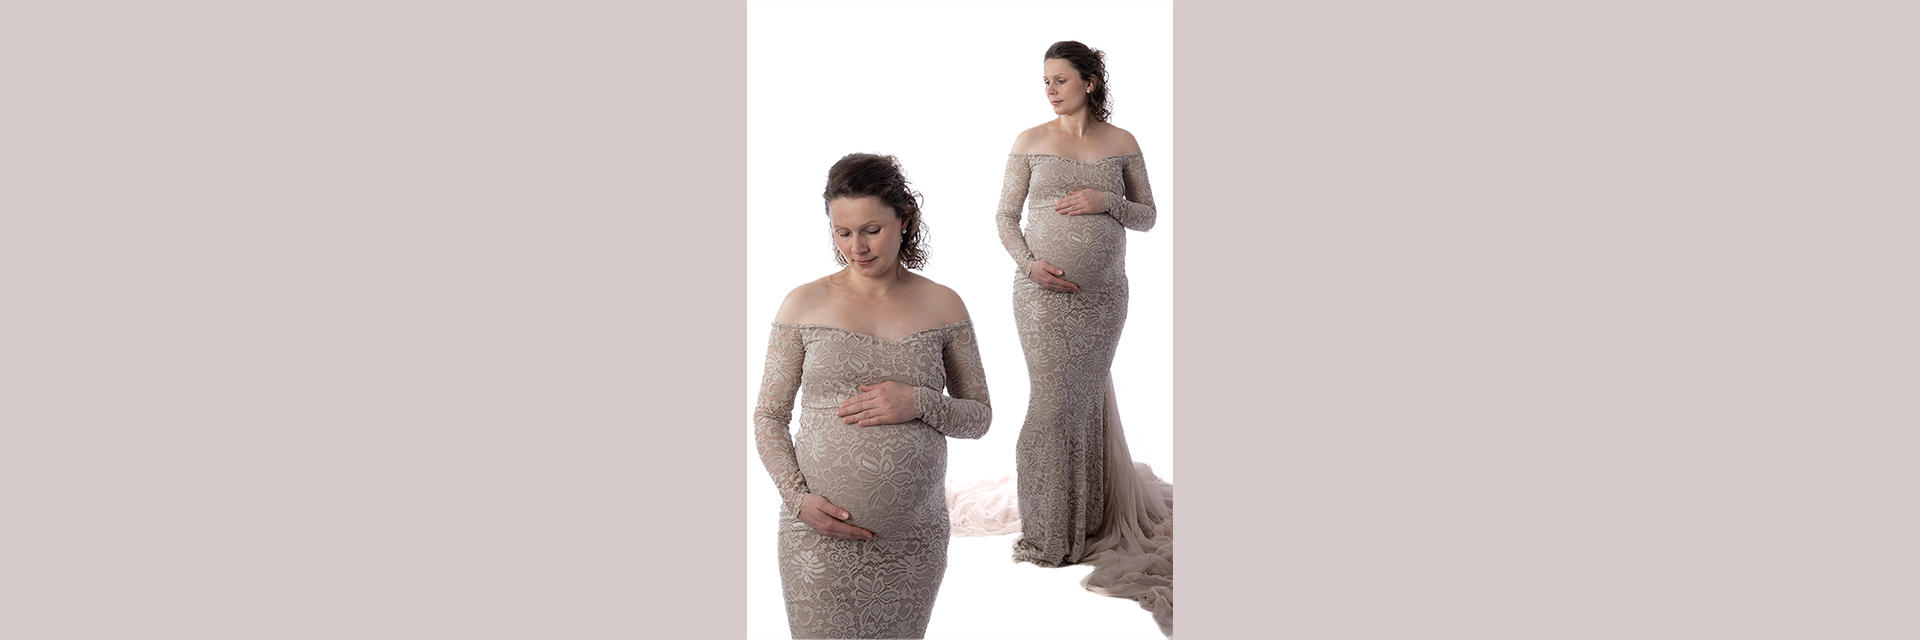 Babybauchshooting mit schwangerer Frau und cremefarbenem Kleid